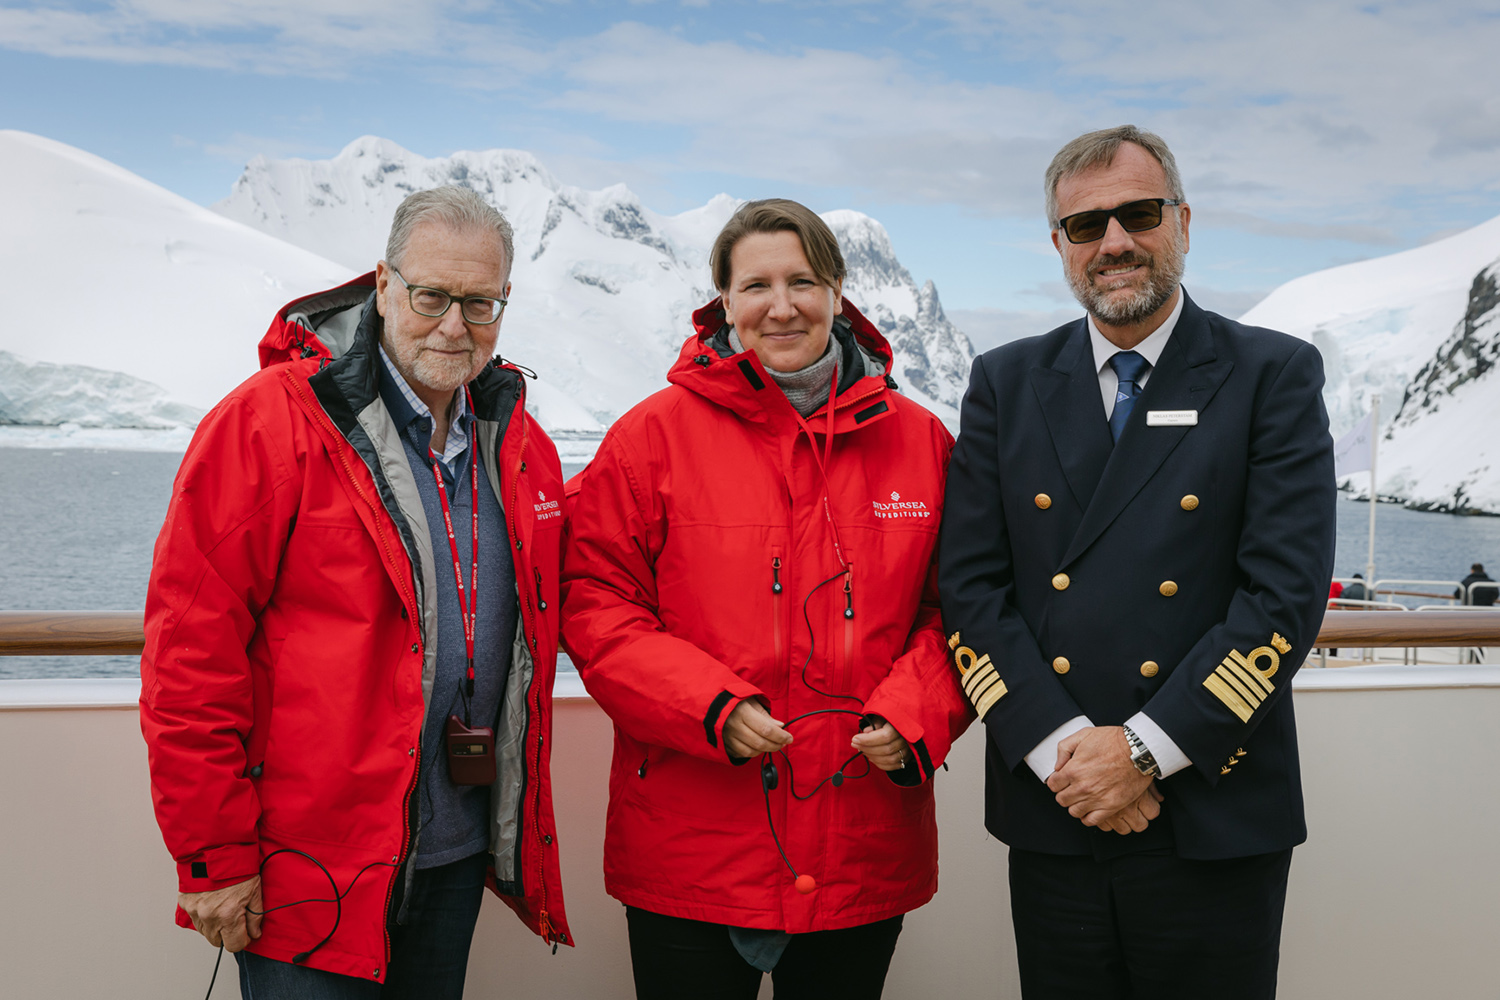 Offizielle Taufpatin der Silver Endeavor ist die britische Polarforscherin Felicity Aston. Sie war 2012 die erste Frau, welche die Antarktis im Alleingang auf Skiern durchquerte – und der erste Mensch überhaupt, der dies mit reiner Muskelkraft tat.